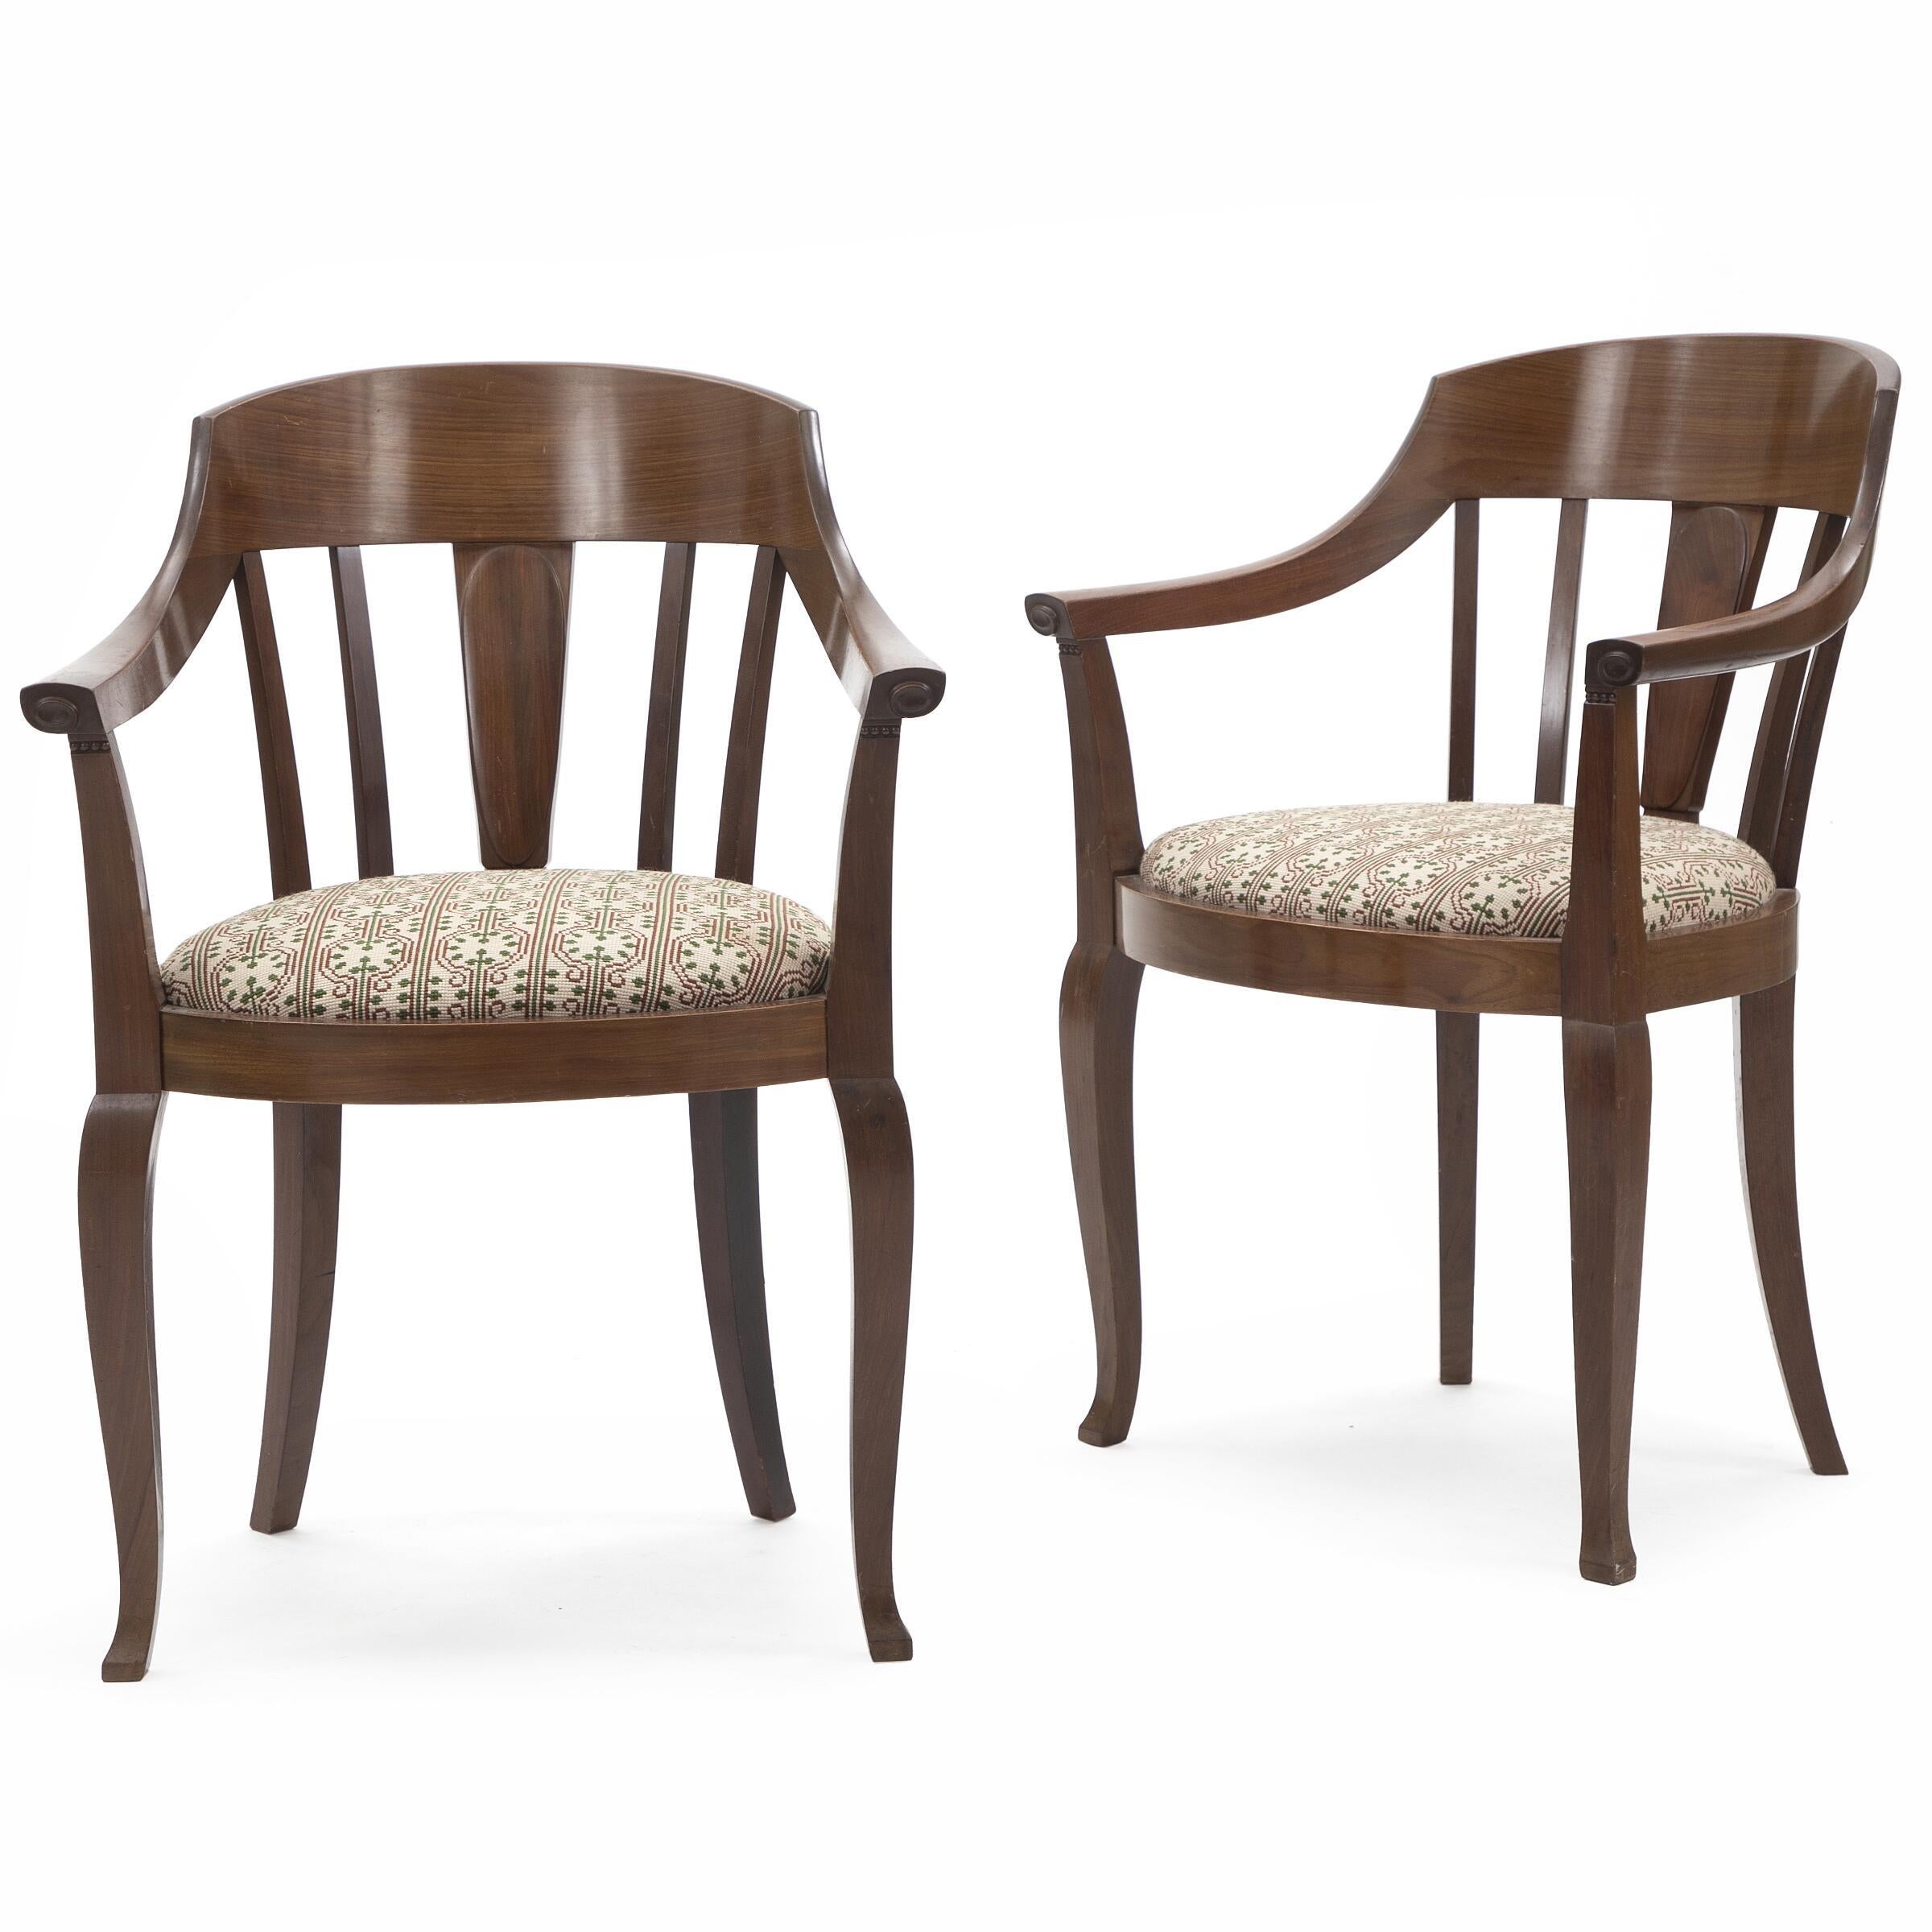 Johan Rohde Ein Paar Stühle mit Mahagonirahmen. Sitz mit bestickter Wolle gepolstert. Aufgeführt ca. 1900-10.

Mirjam Gelfer-Jørgensen schreibt in ihrem bahnbrechenden Buch 